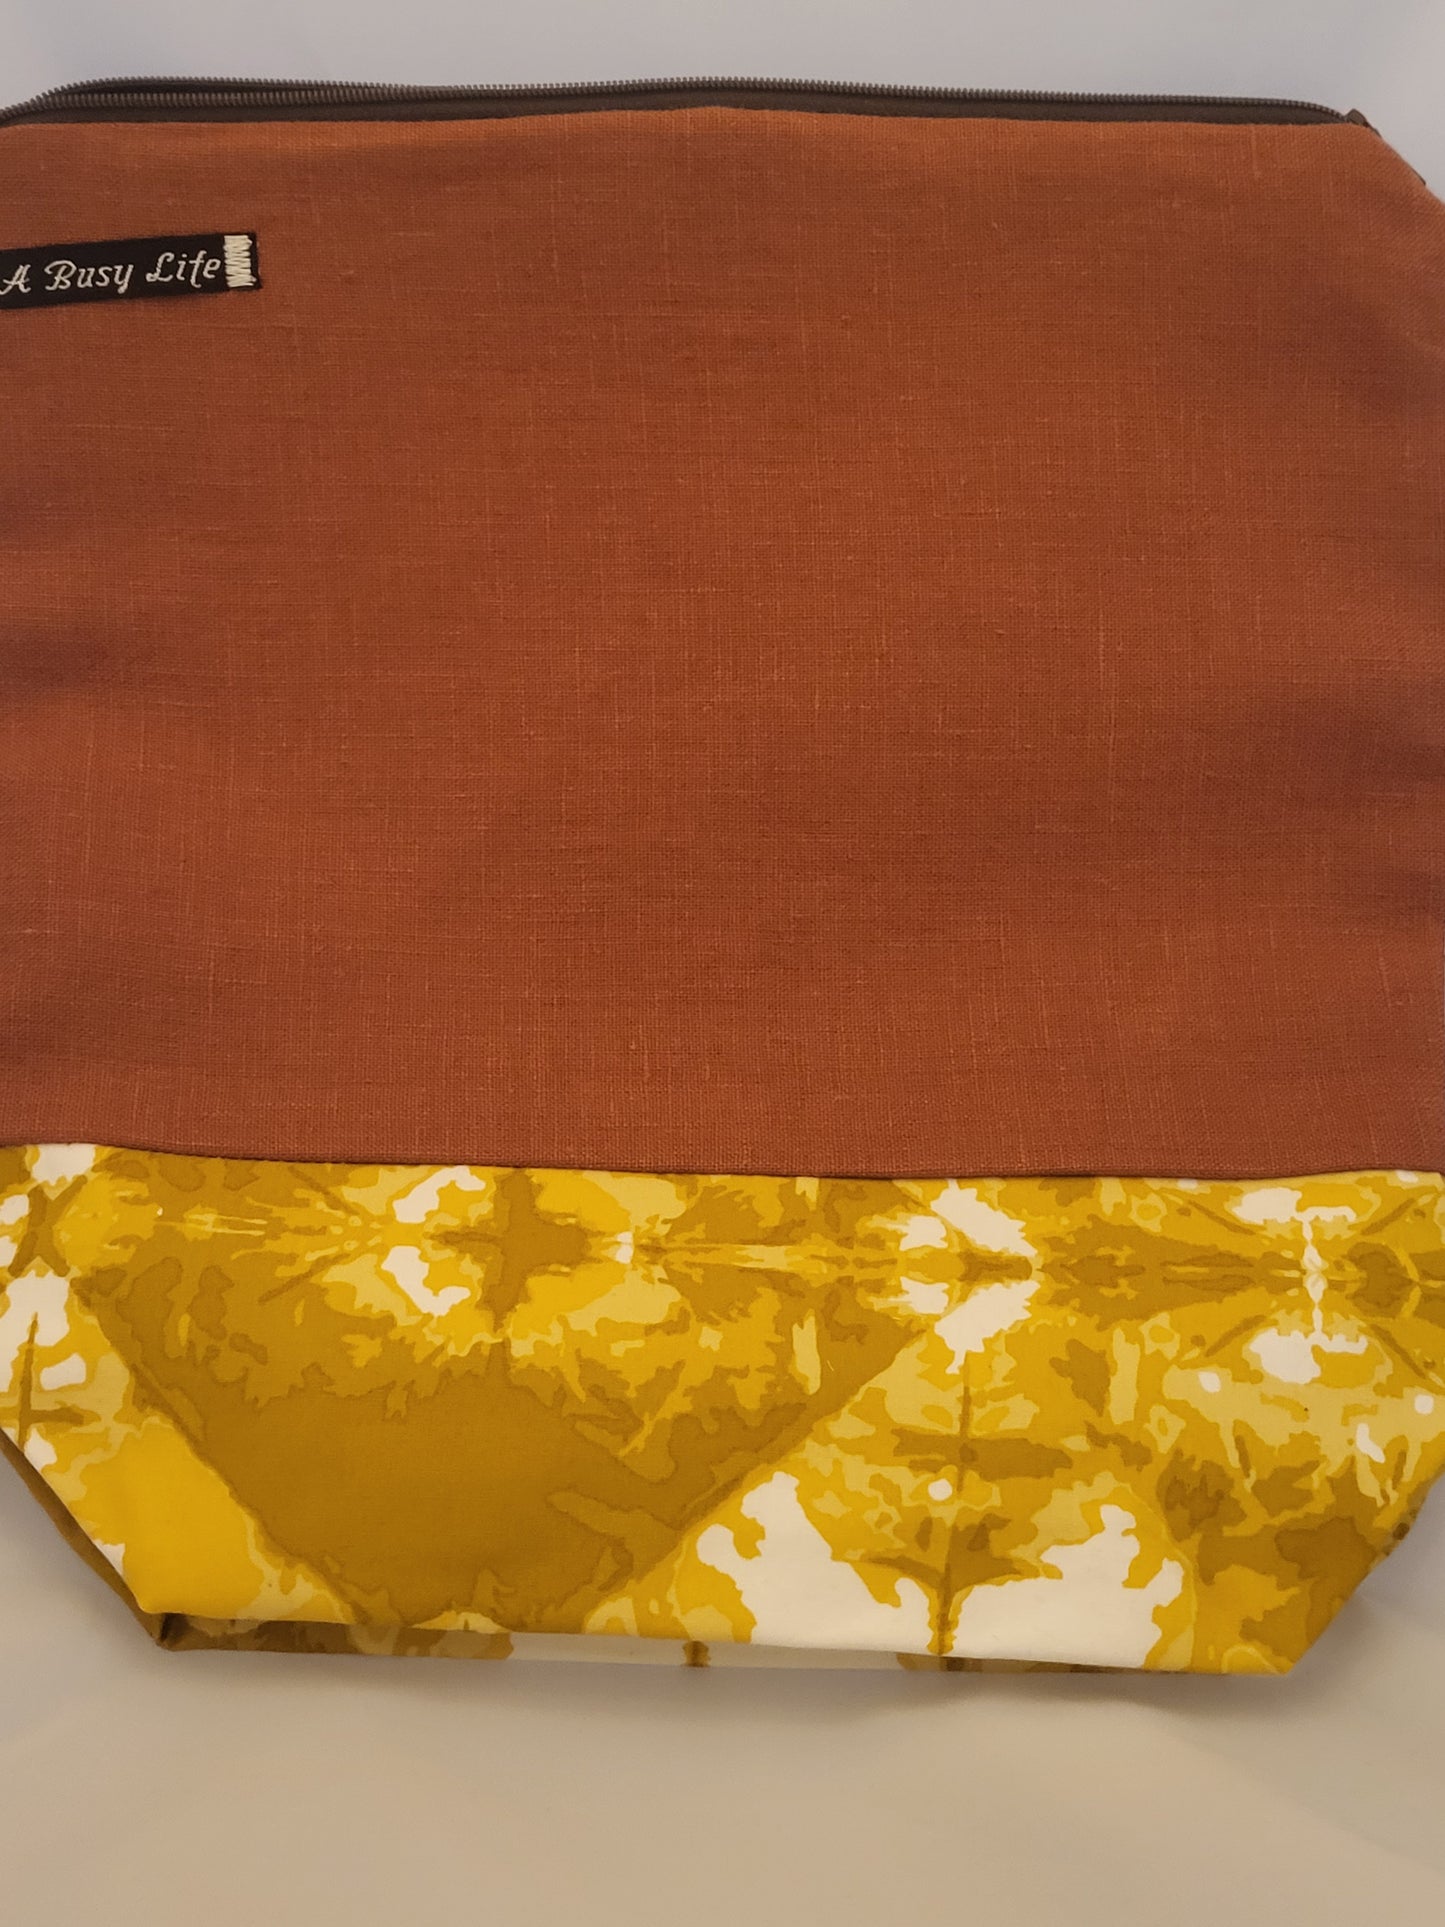 Rust linen and golden batik  project bag, Zippered Project Bag,   project bag,  Storage bag